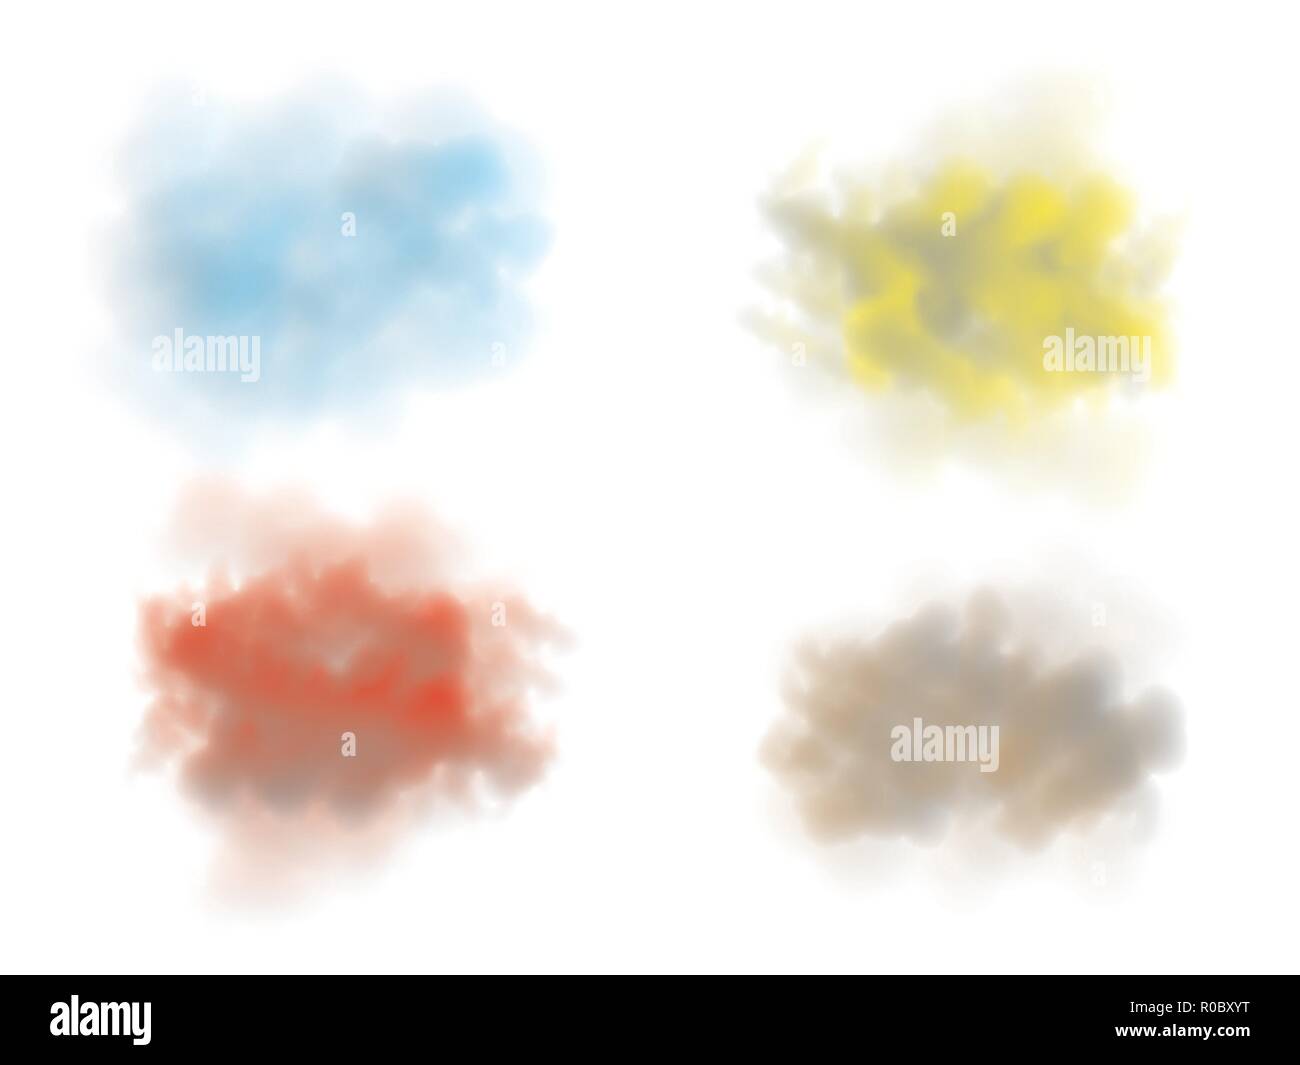 Nebel oder Rauch isolierte transparente Spezialeffekt. Weiße Vektor Bewölkung, Nebel oder Smog Hintergrund. Vektor-illustration Stock Vektor